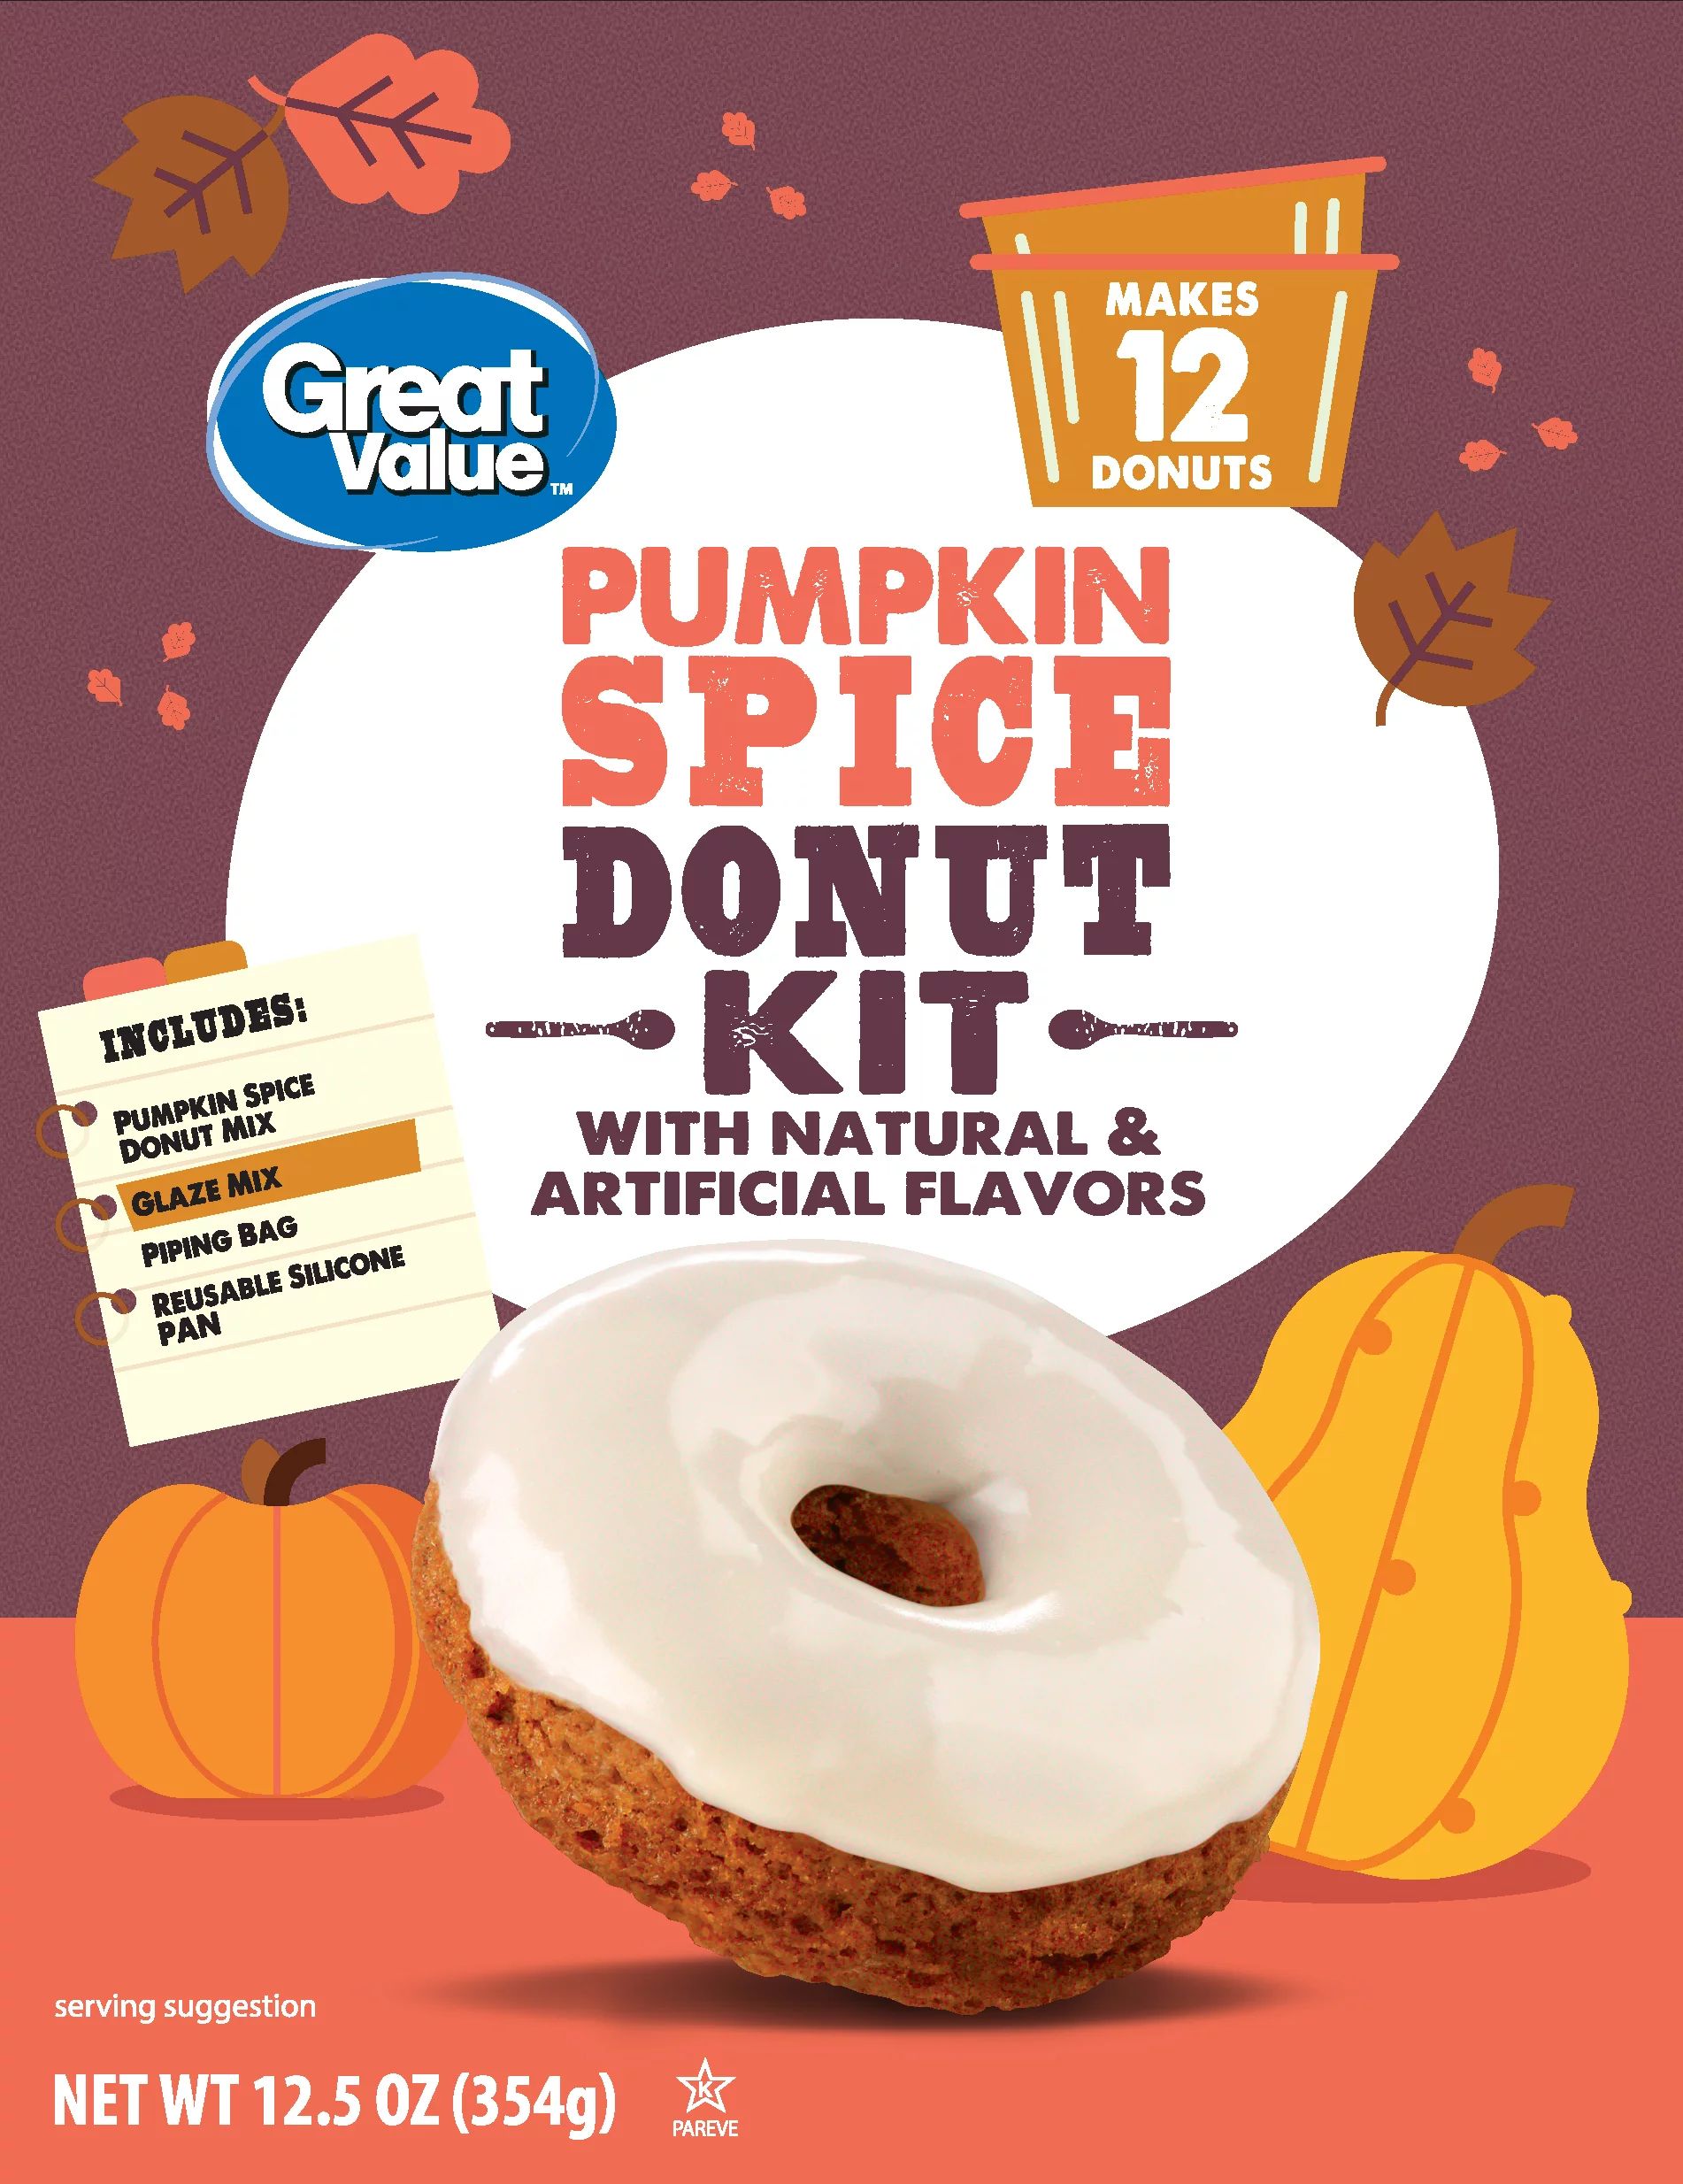 Great Value Pumpkin Spice Donut Kit - Walmart.com | Walmart (US)